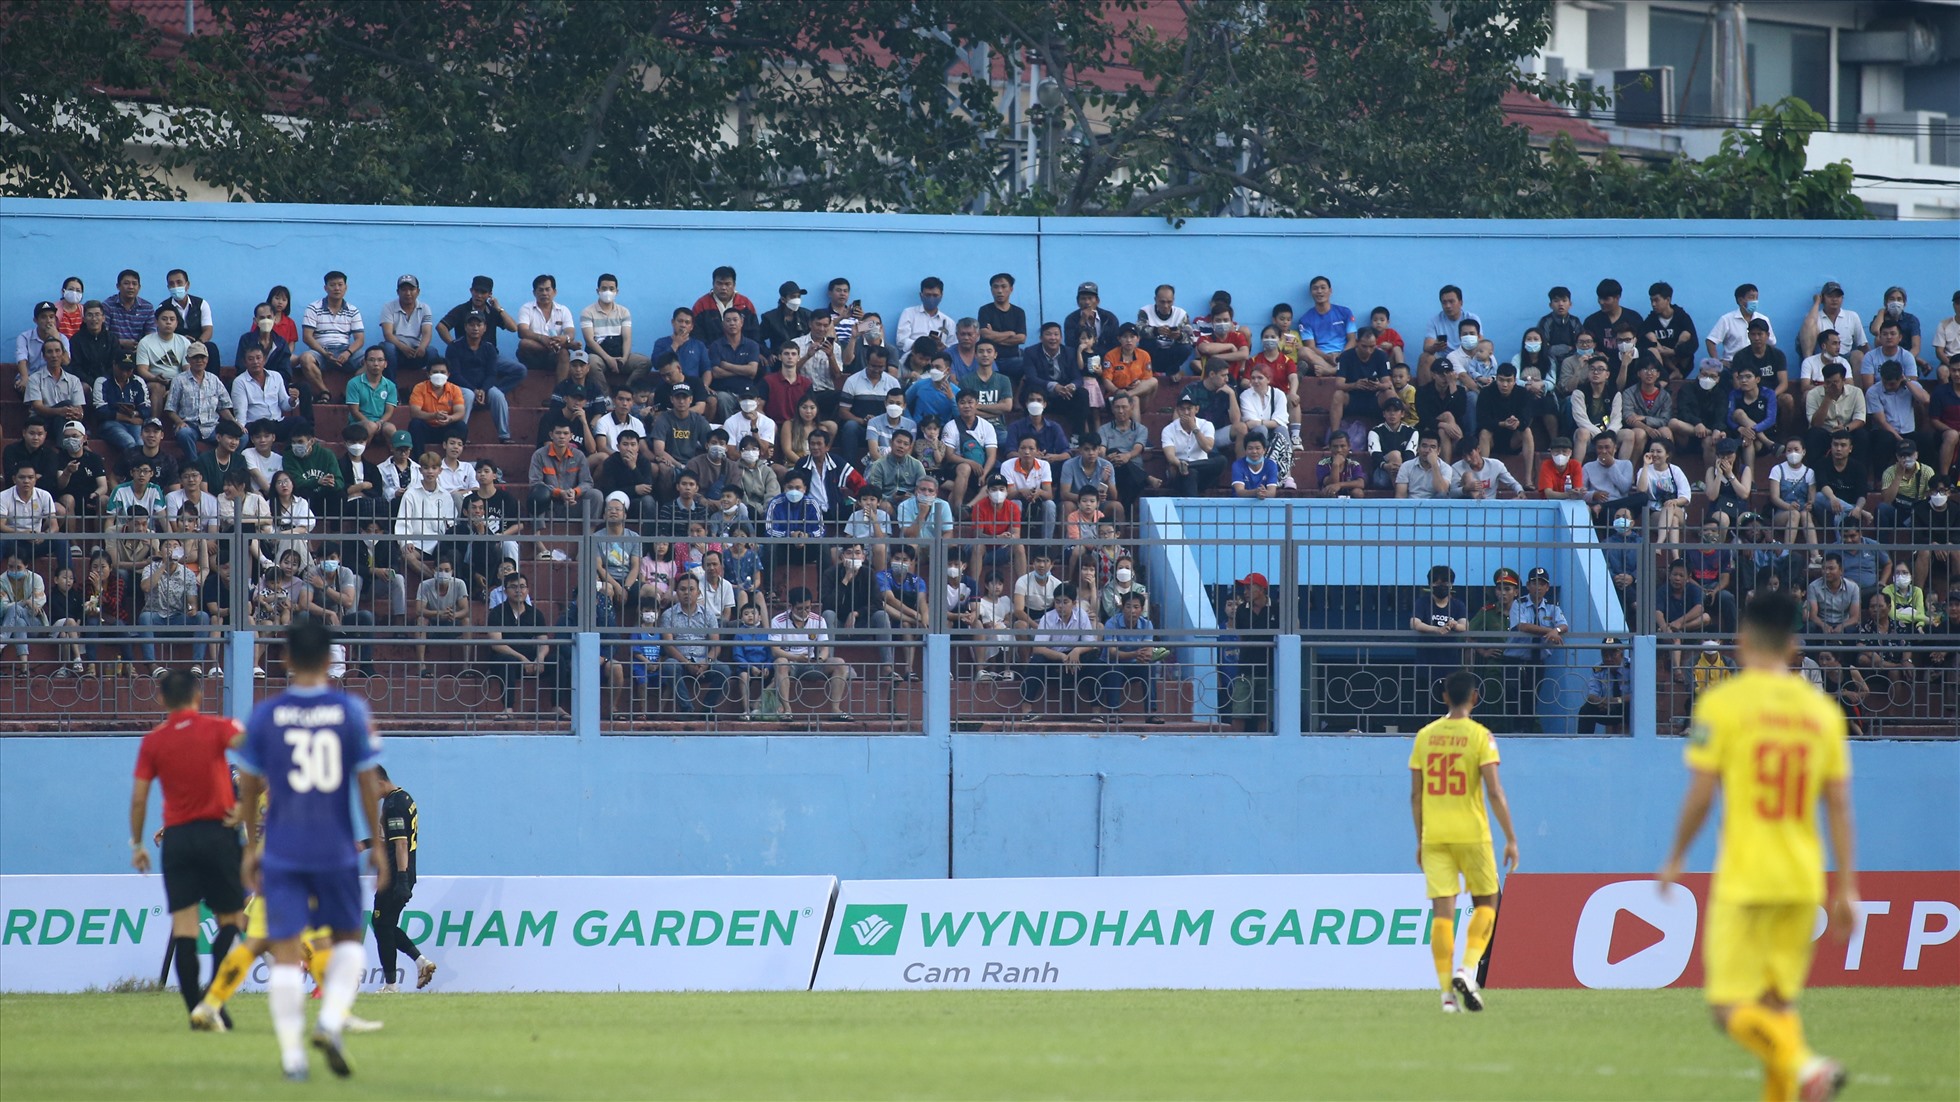 Với sự cổ vũ cuồng nhiệt của khán giả nhà, các cầu thủ Khánh Hòa đặt quyết tâm giành chiến thắng trong trận đầu tiên trở lại V.League sau 3 năm vắng bóng.